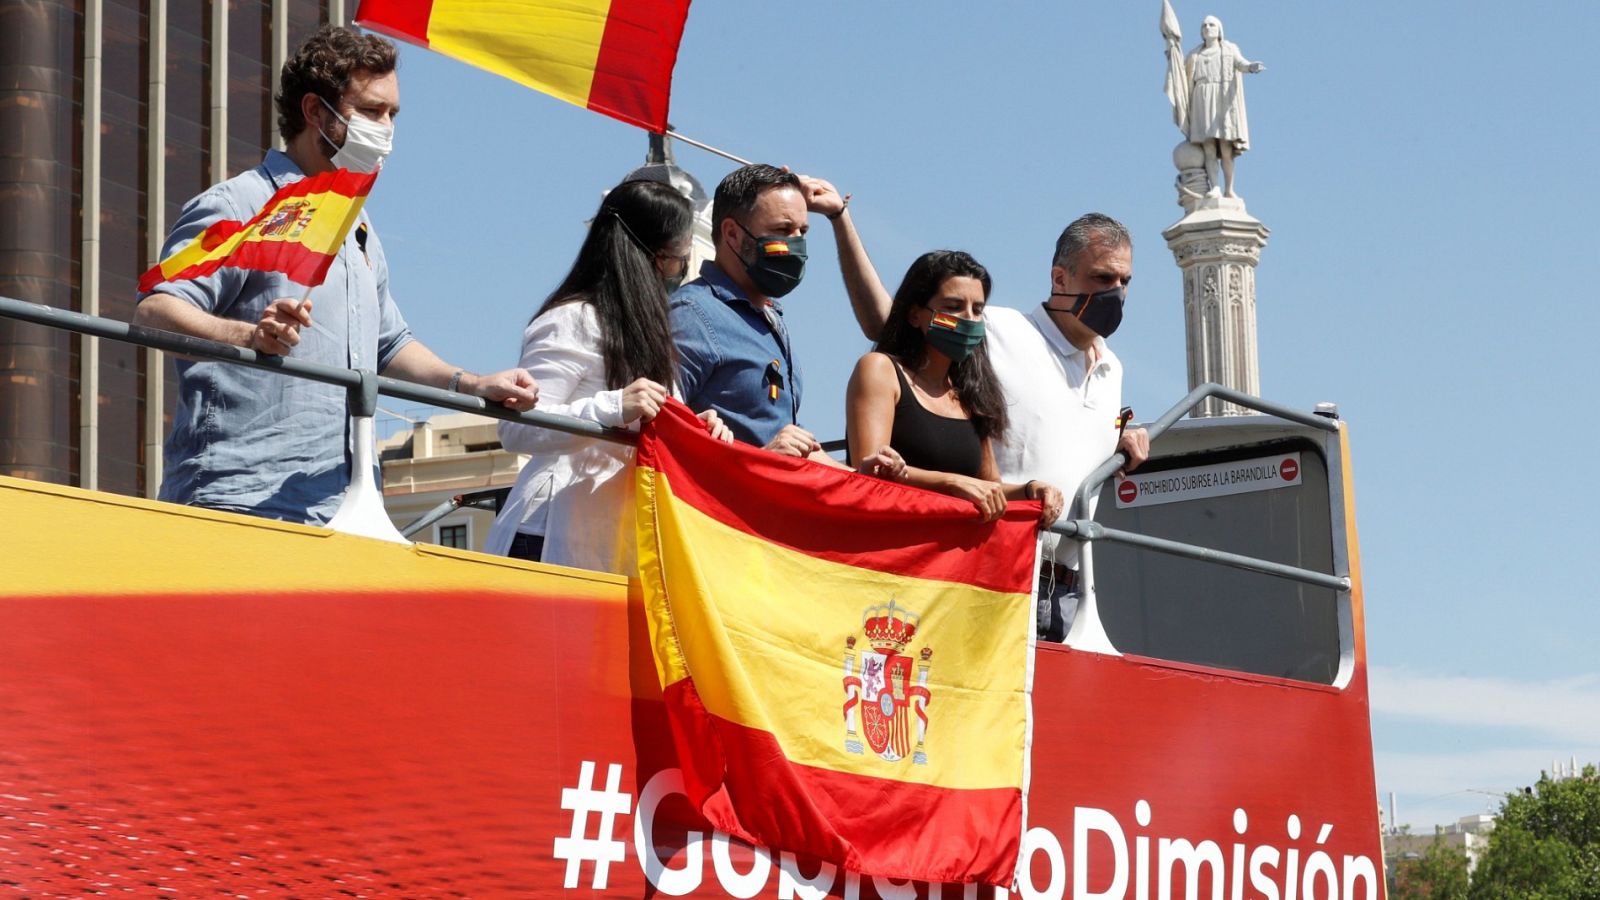 La manifestación de Vox en Madrid arranca con centenares de manitestantes en sus vehículos pidiendo "libertad"